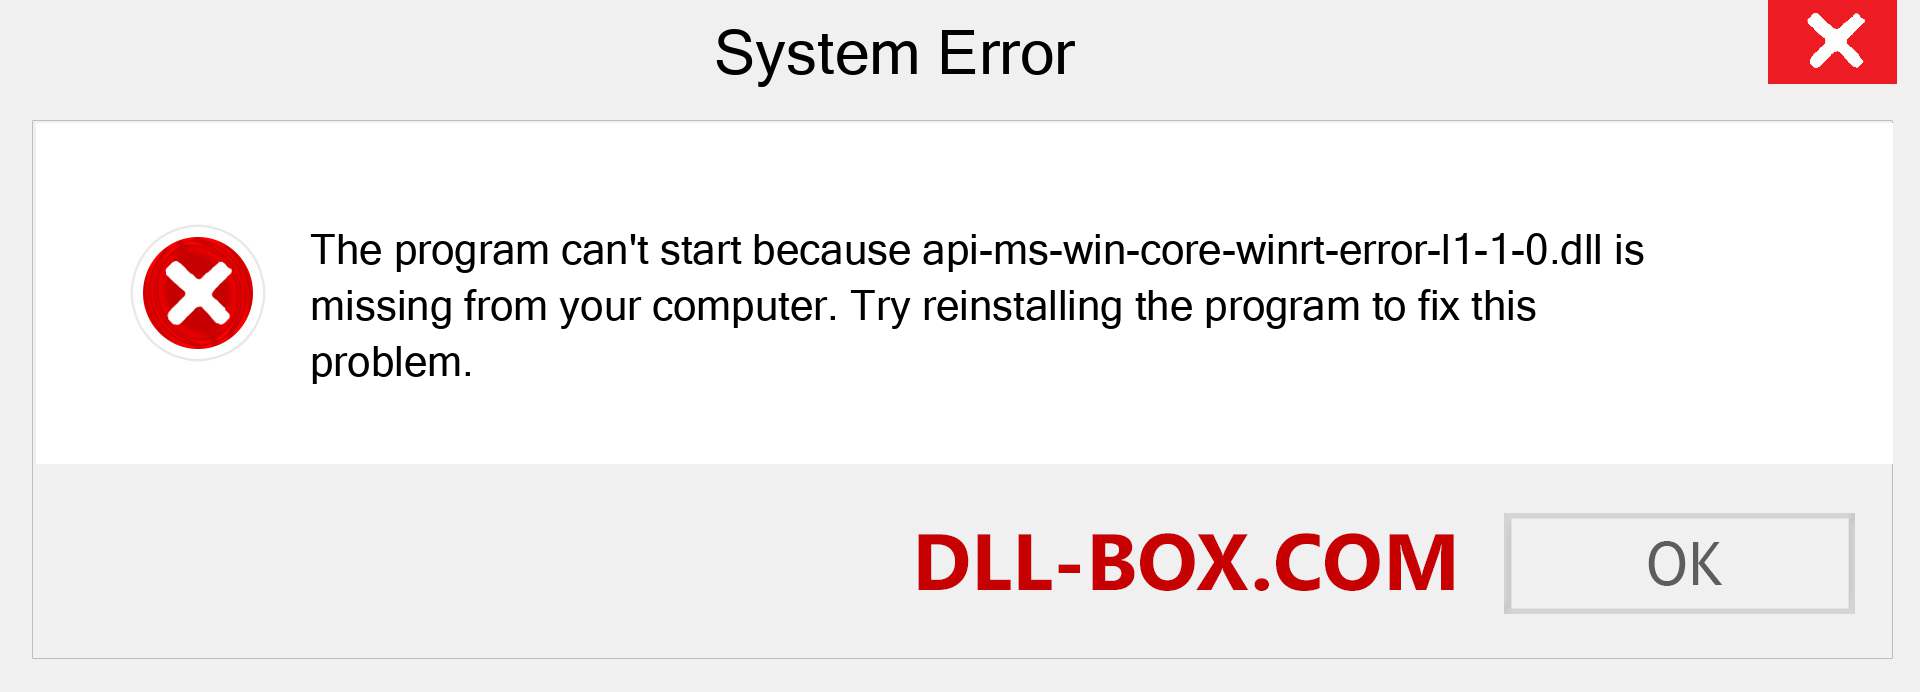  api-ms-win-core-winrt-error-l1-1-0.dll file is missing?. Download for Windows 7, 8, 10 - Fix  api-ms-win-core-winrt-error-l1-1-0 dll Missing Error on Windows, photos, images